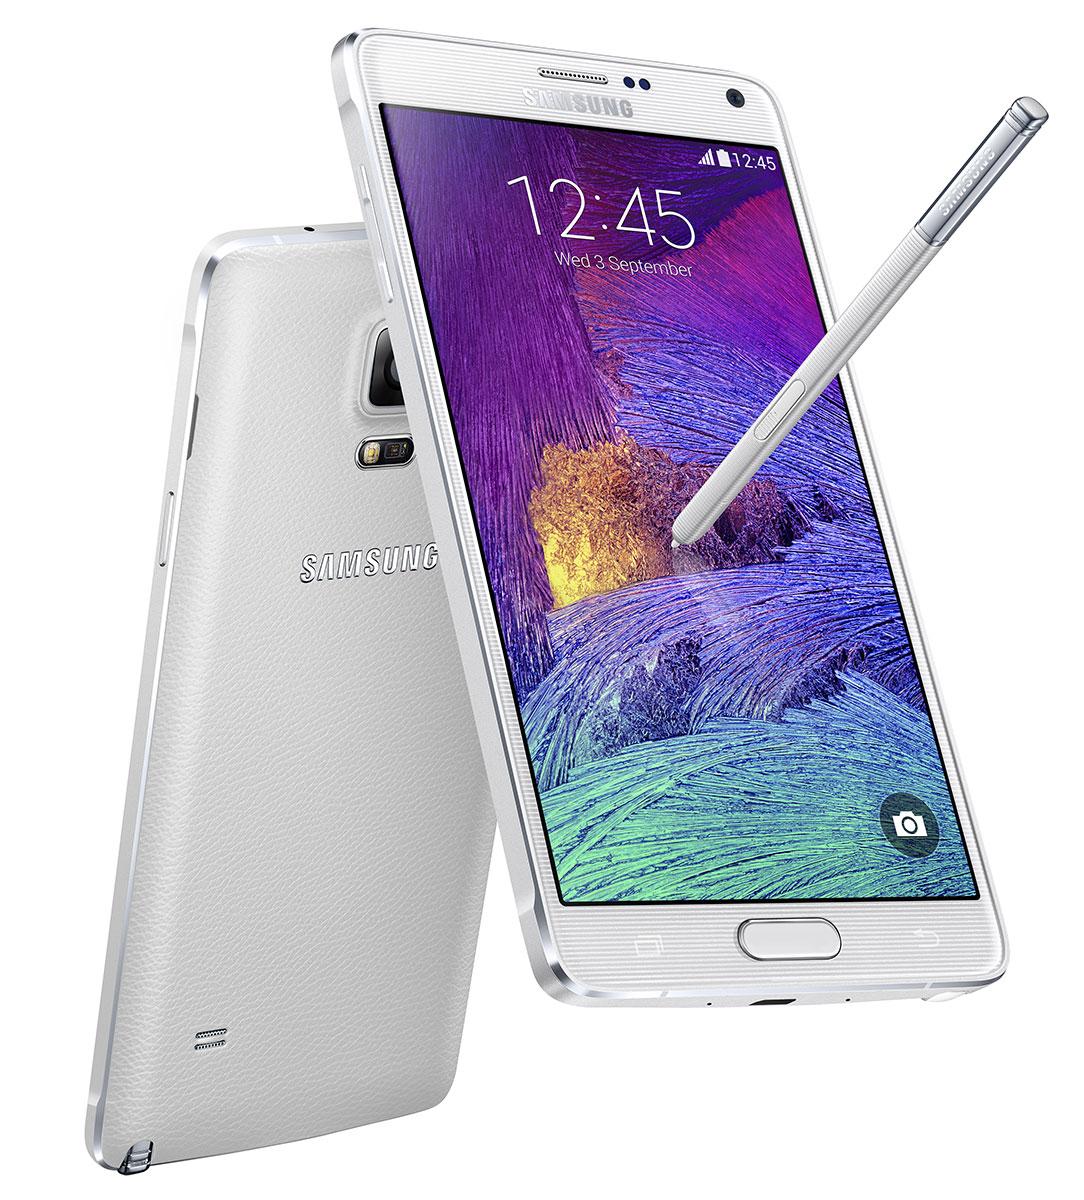 Samsung Galaxy Note 4 en color blanco visto por detrás y por delante